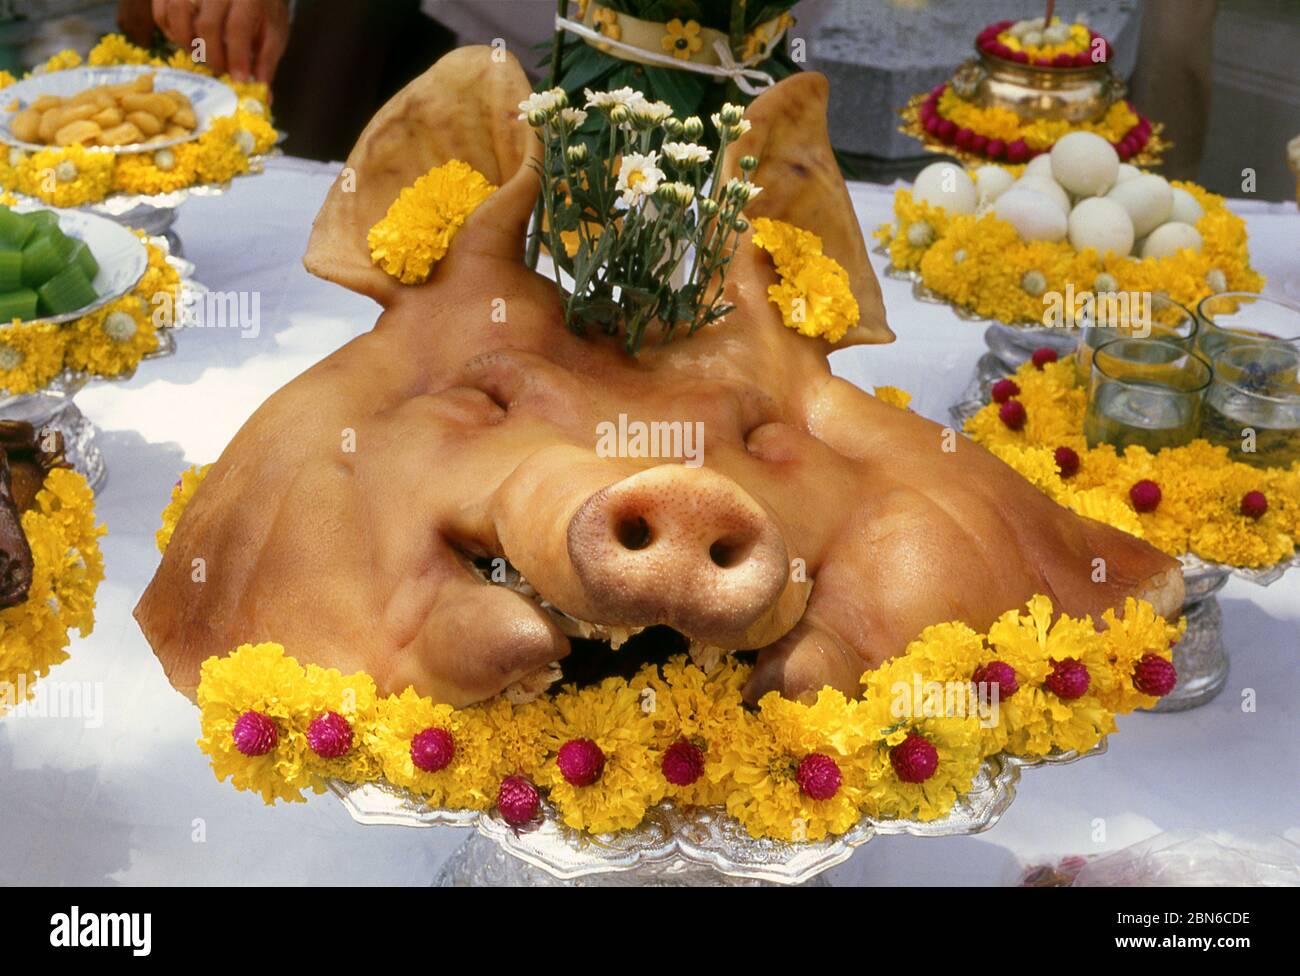 Thailand: Ein Schweinkopf, der in einer Segenszeremonie in Bangkok verwendet wird. Schweineköpfe werden oft in thailändischen Segenszeremonien verwendet, wie zum Beispiel bei einem neuen Geschäftsvorhaben Stockfoto